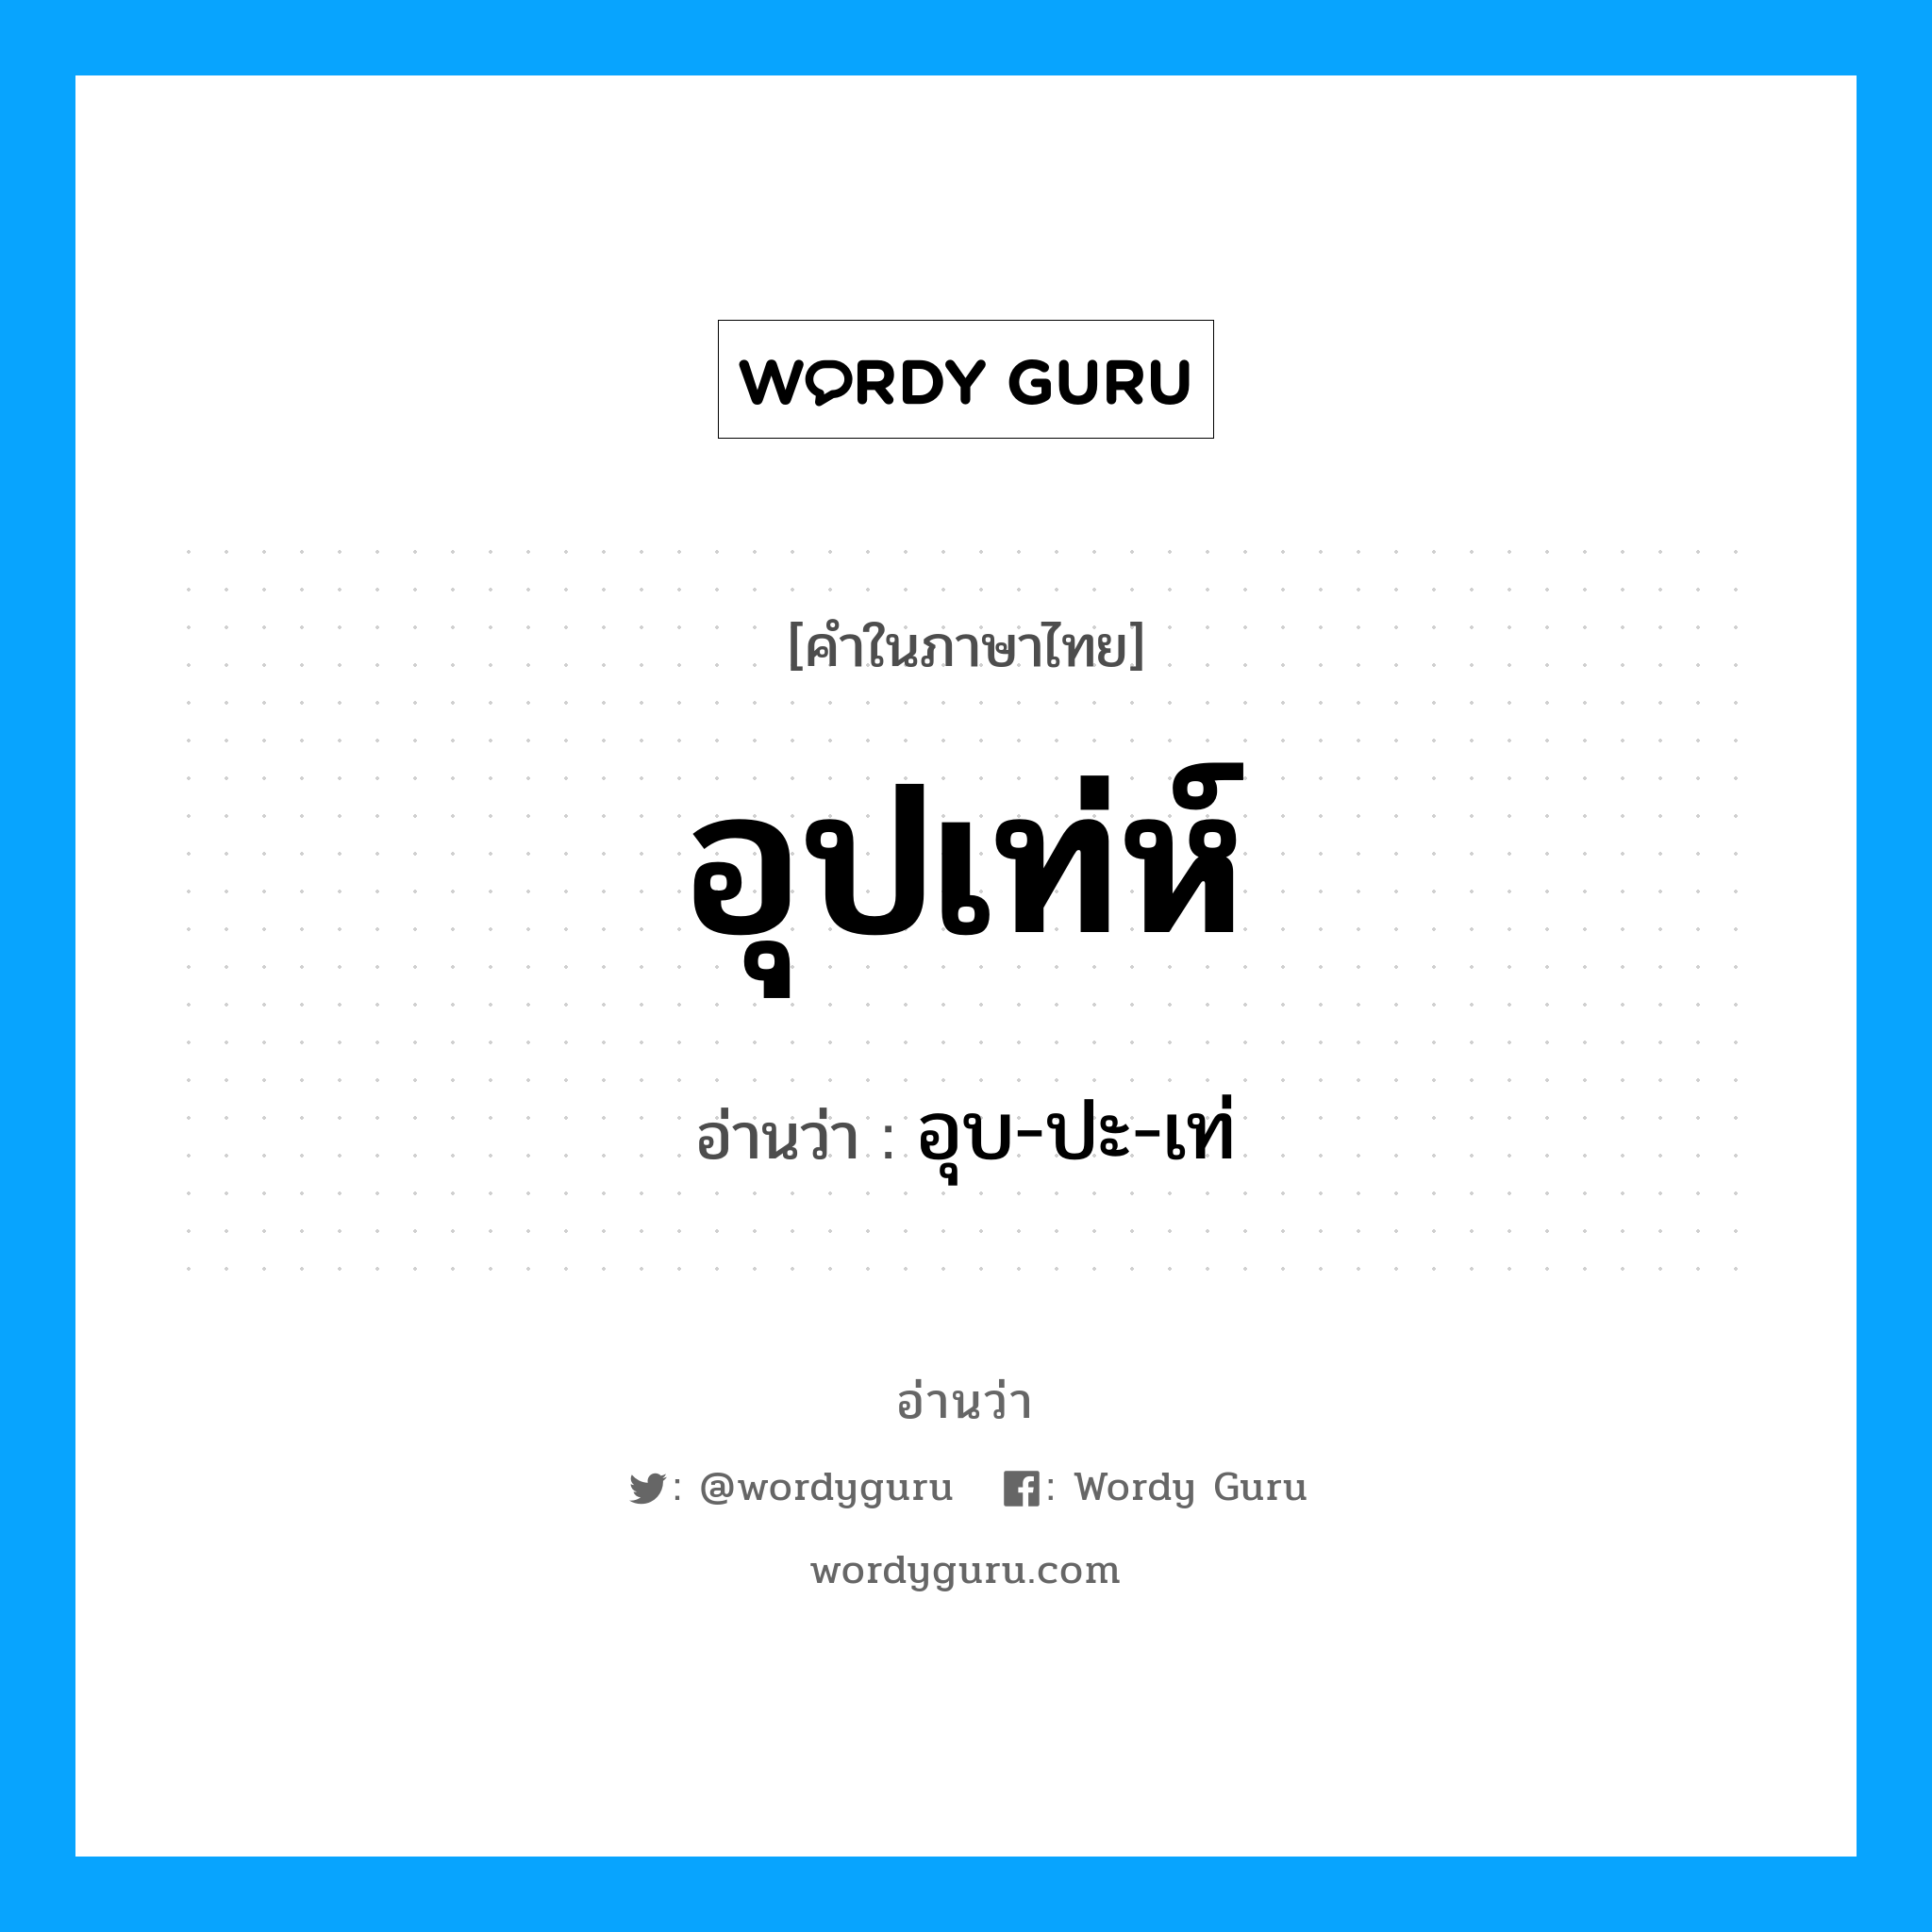 อุบ-ปะ-เท่ เป็นคำอ่านของคำไหน?, คำในภาษาไทย อุบ-ปะ-เท่ อ่านว่า อุปเท่ห์